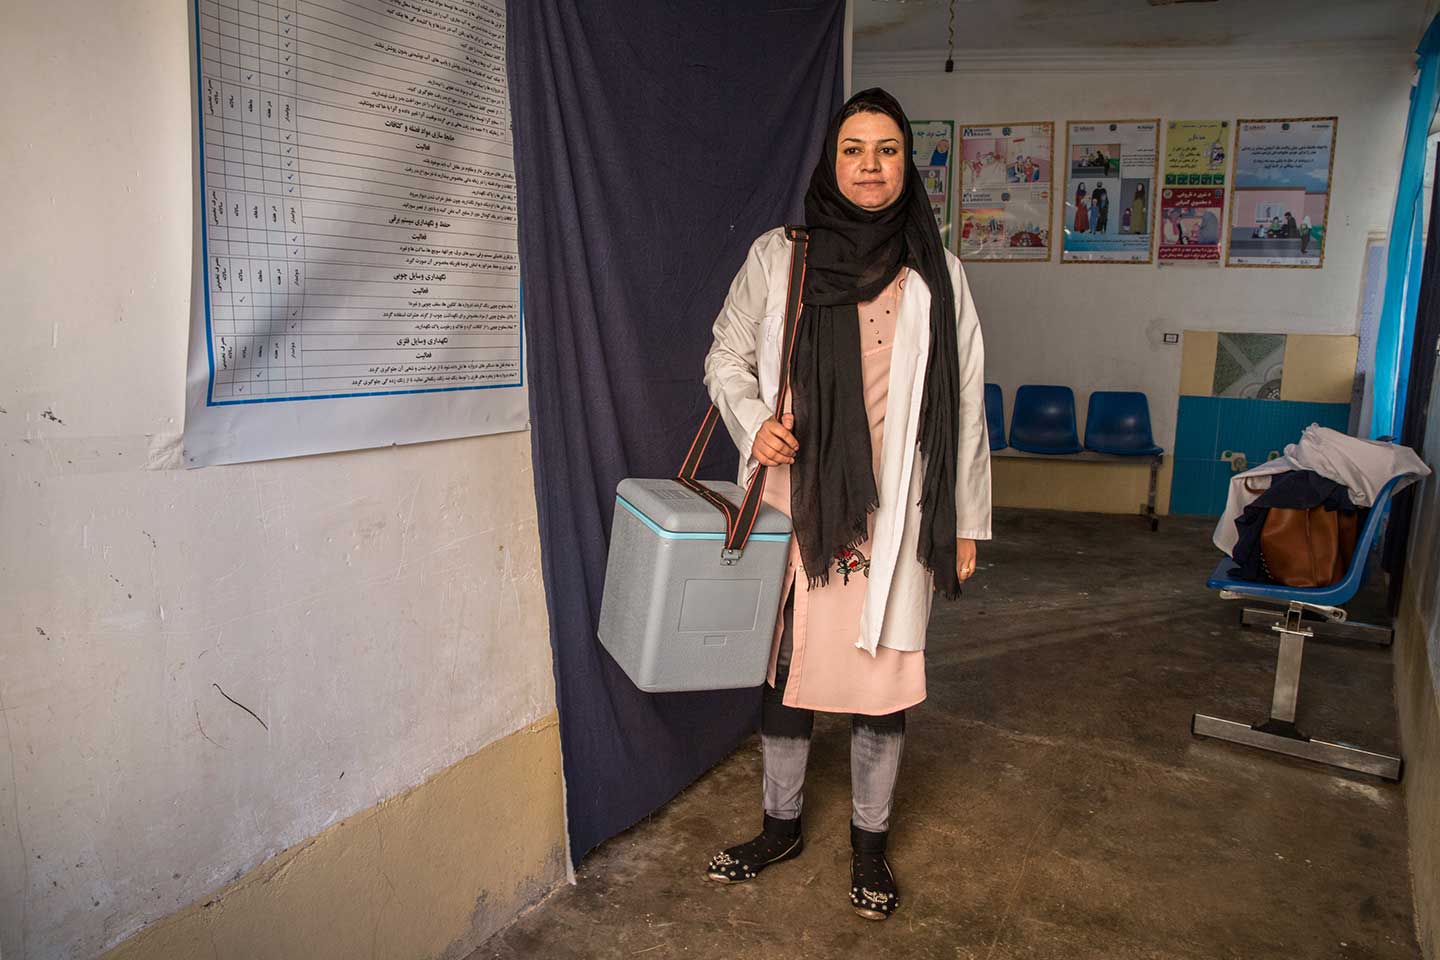 Razia, a female vaccinator in Afghanistan